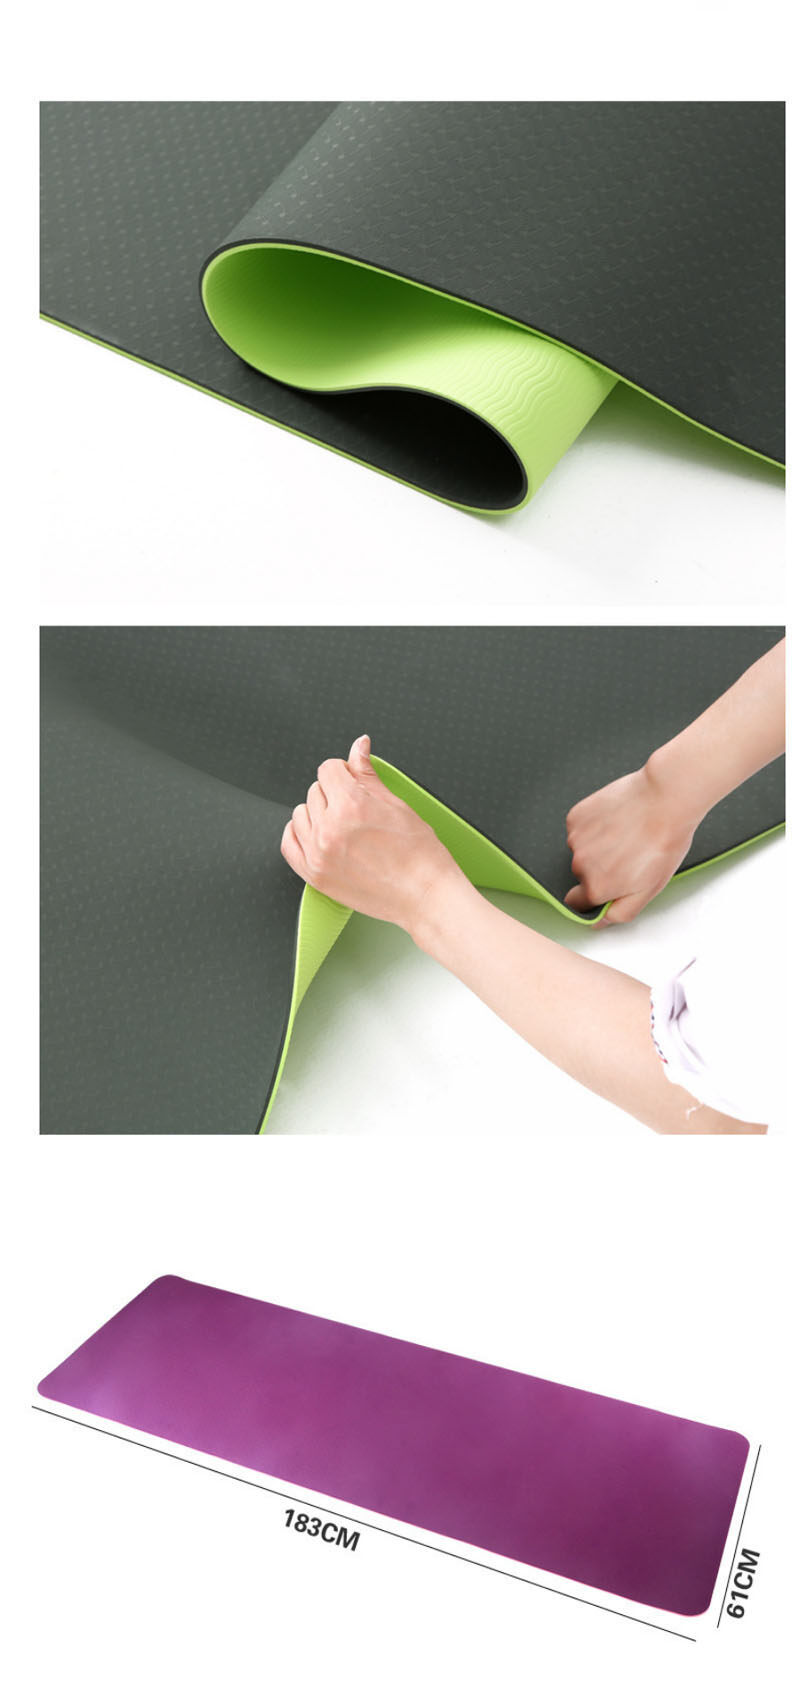 Thảm Yoga YG01 siêu bền loại 0.6cm màu tím kèm túi đựng